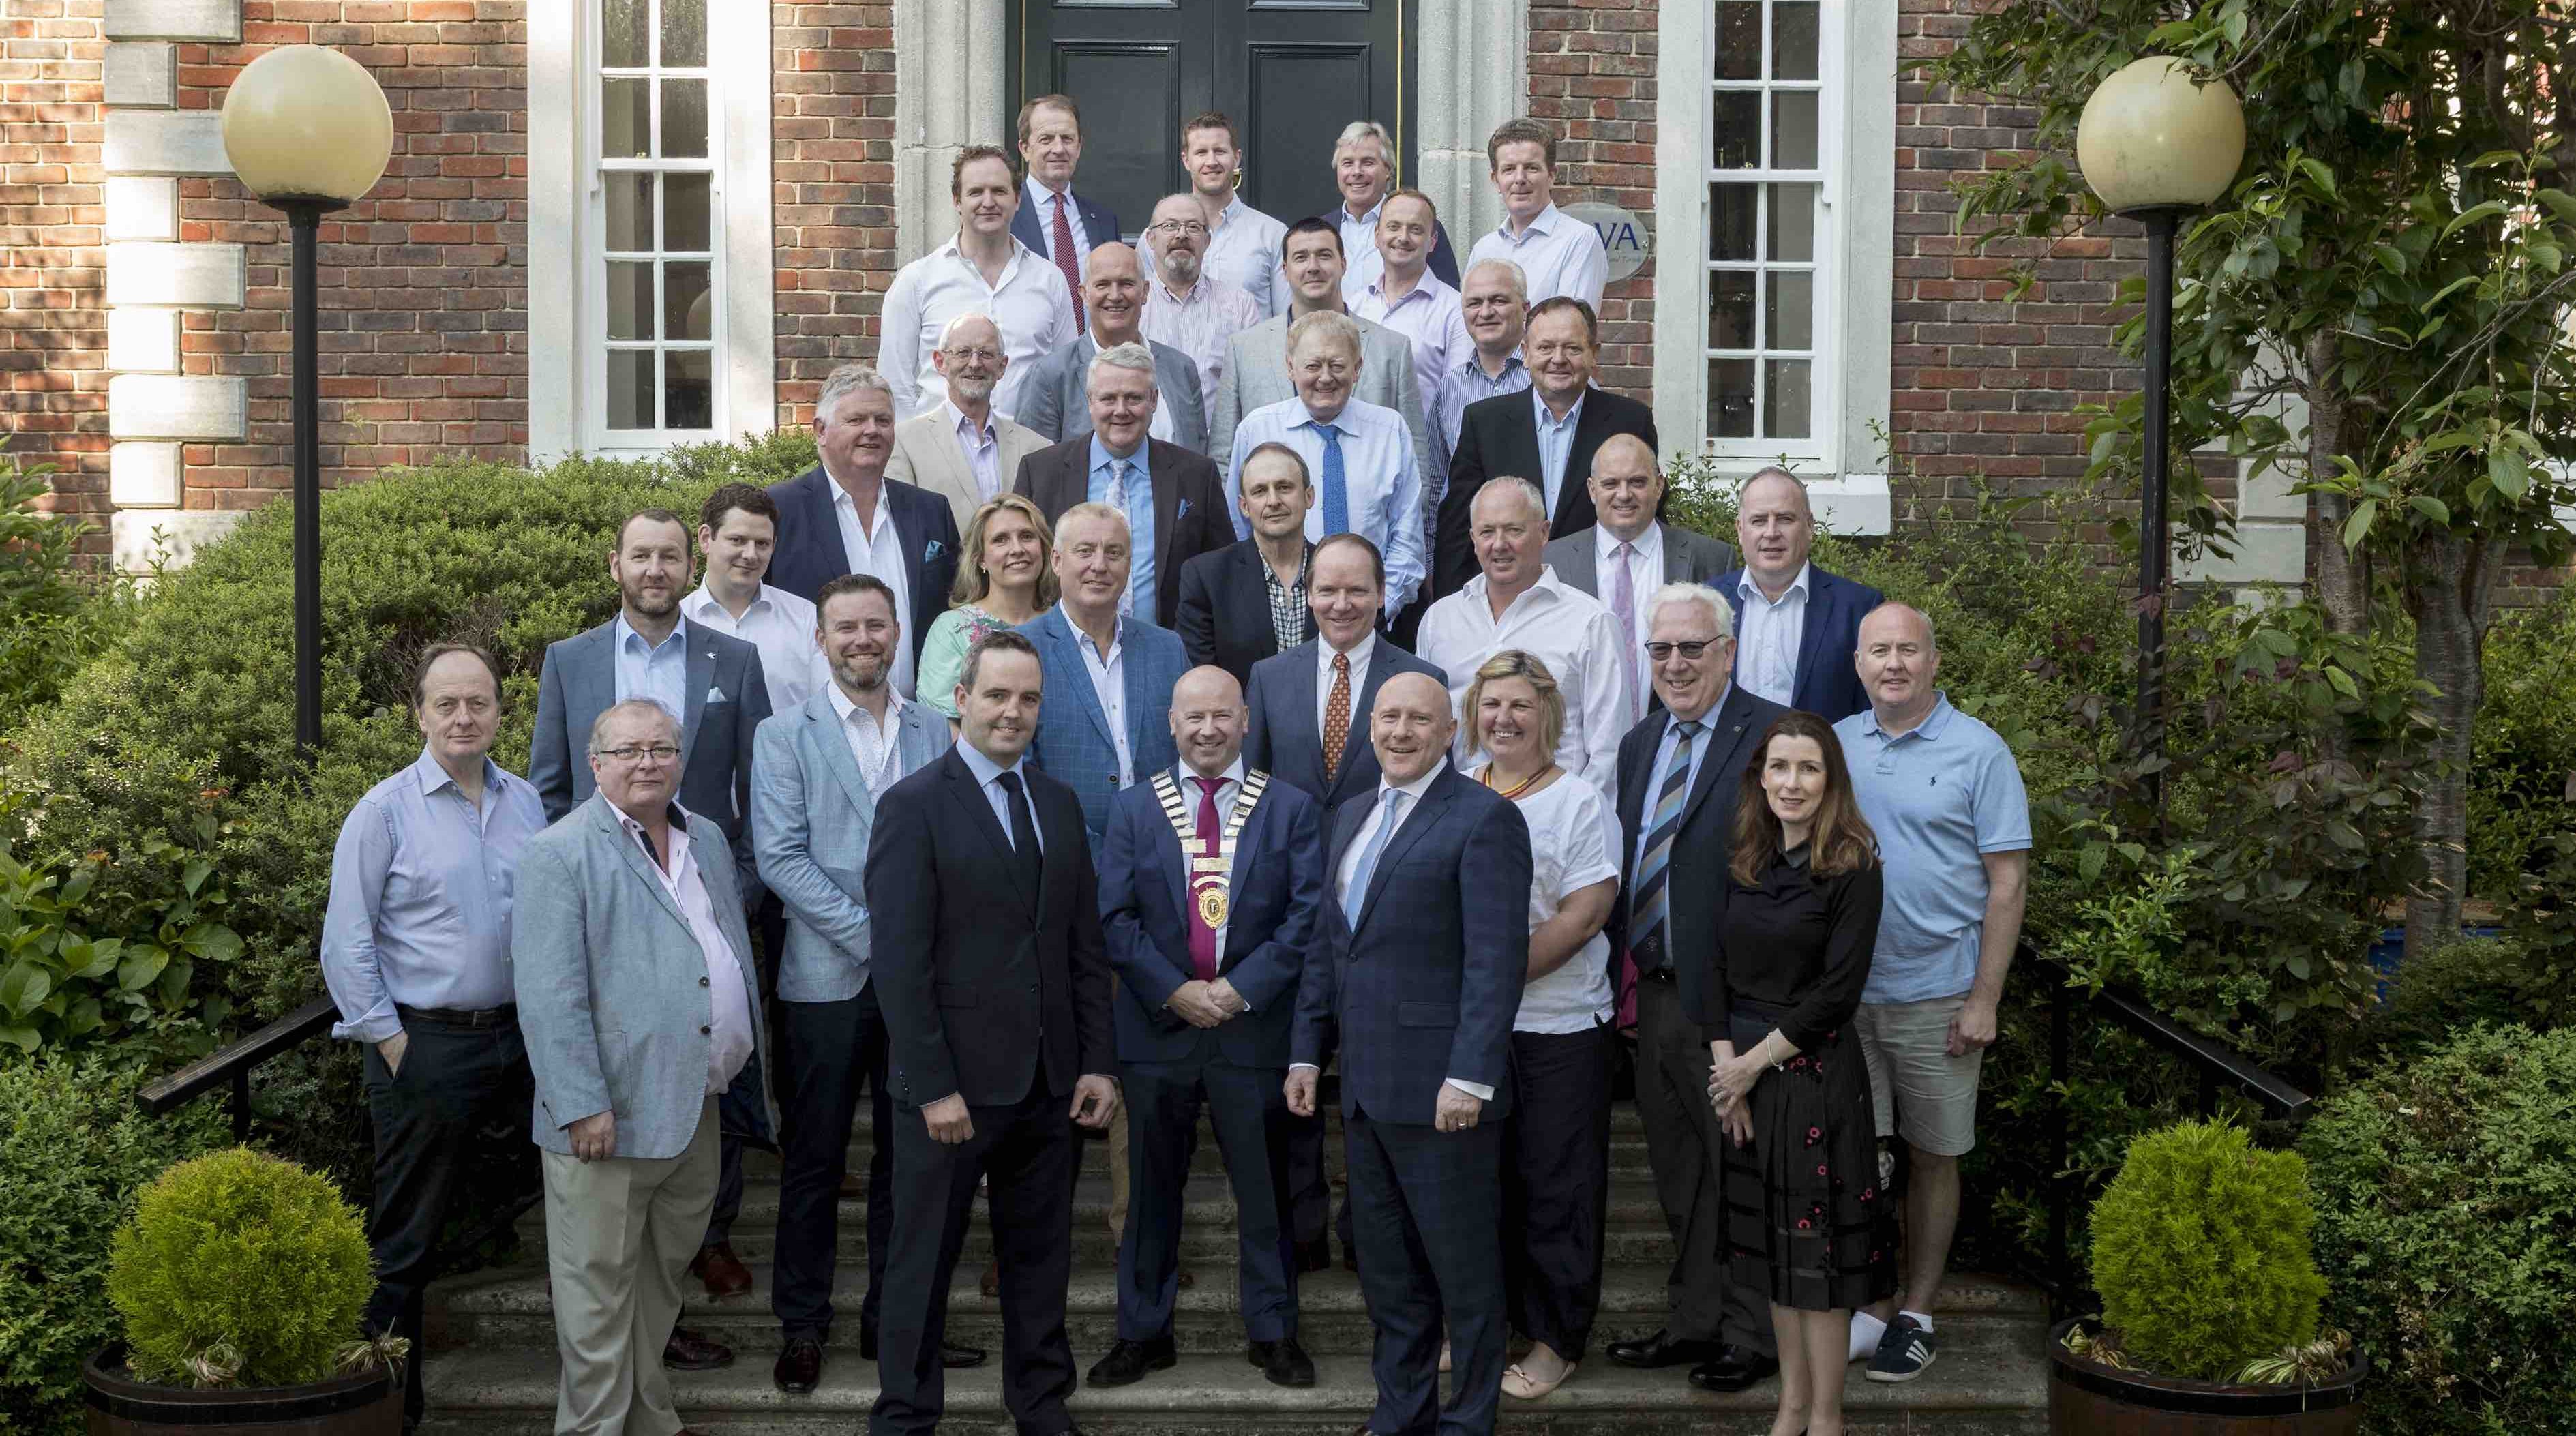 LVA Council 2018 - 2019